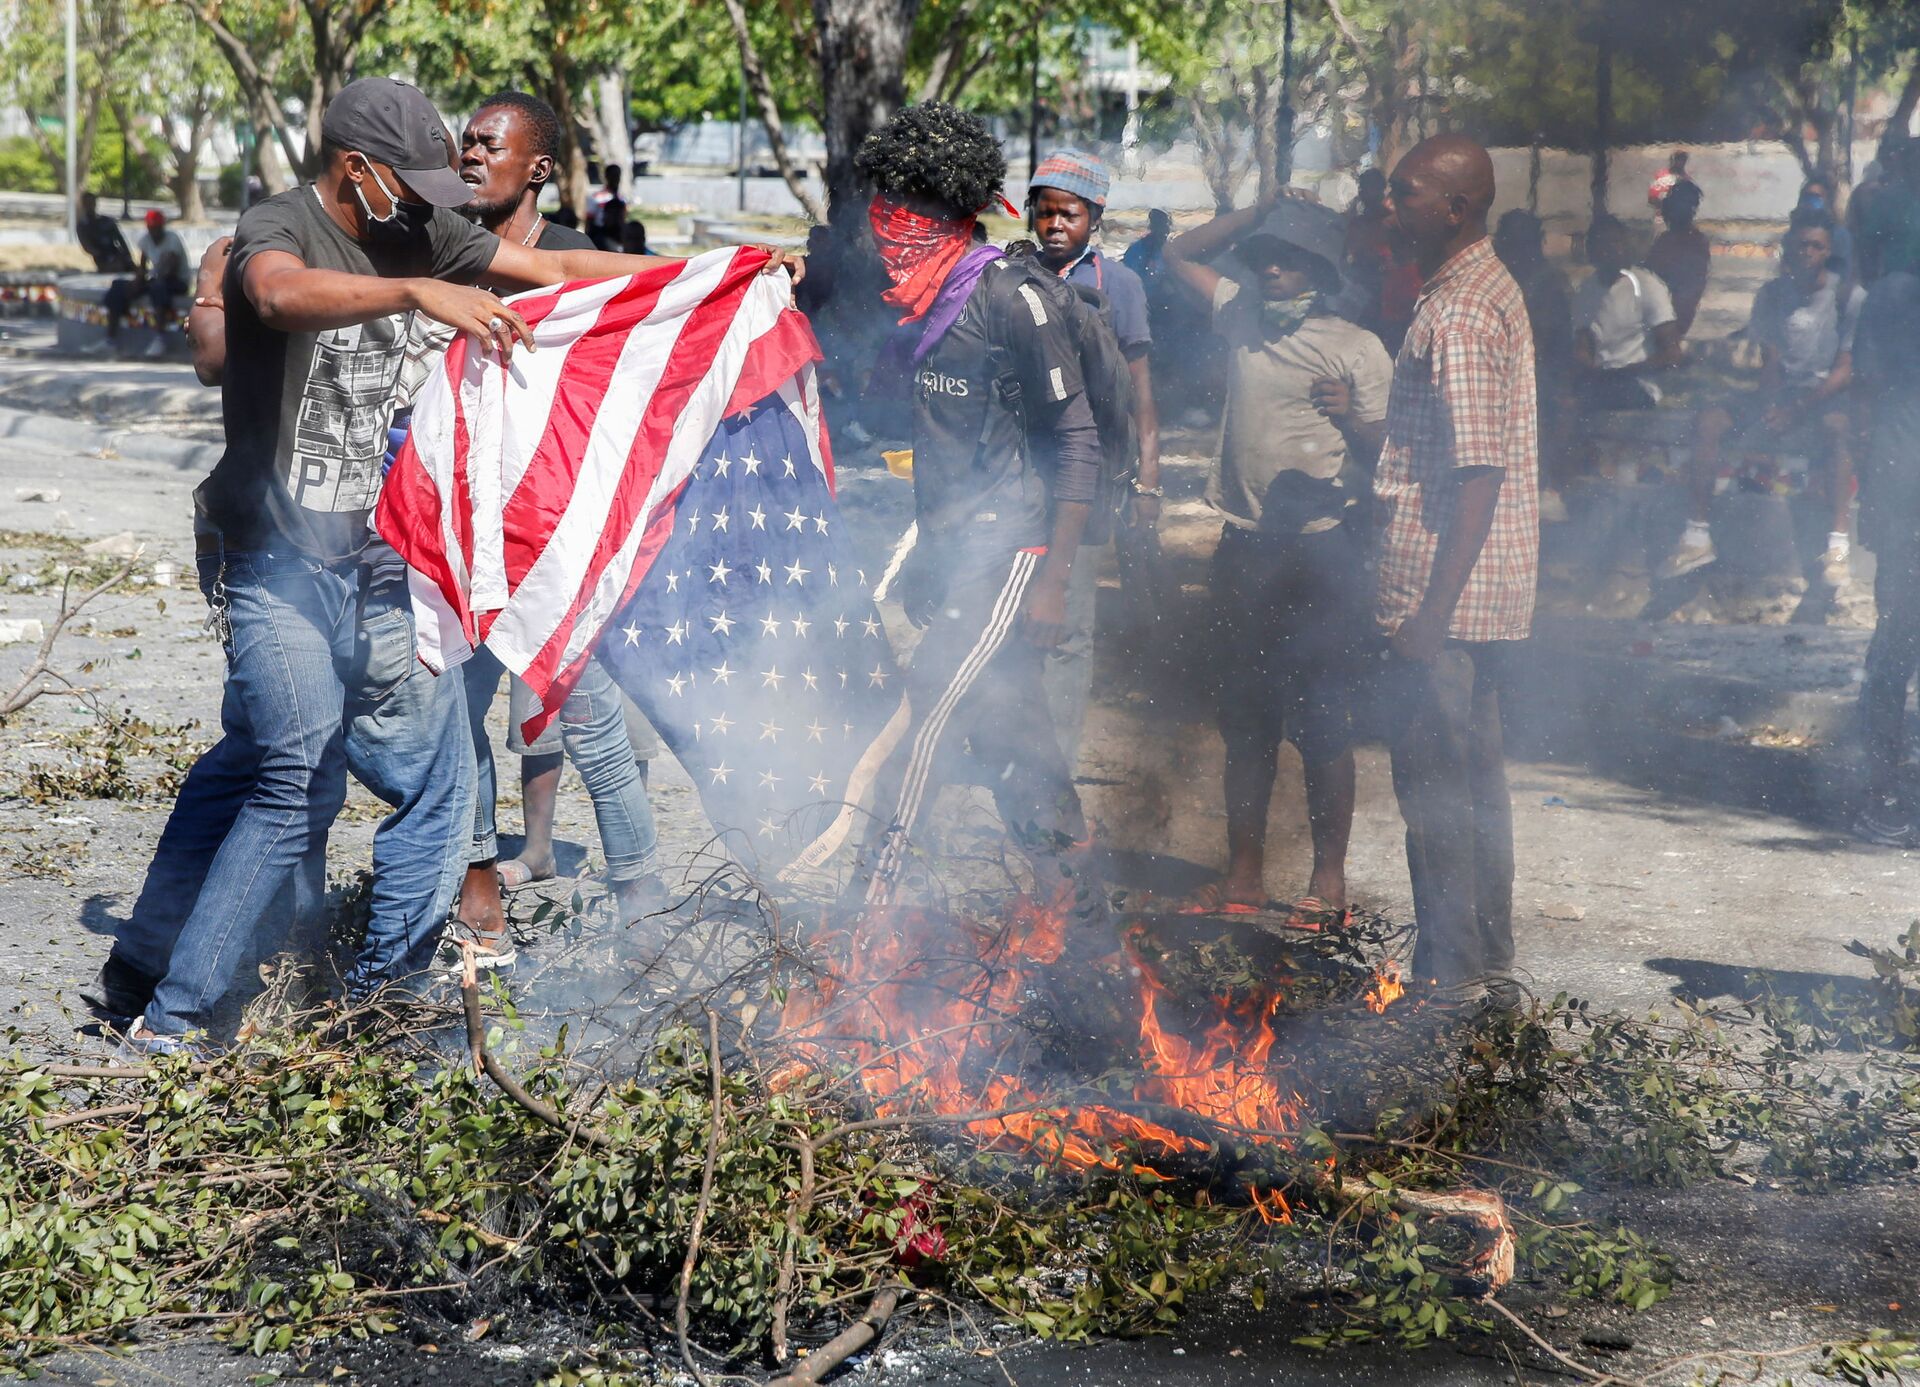 Protestos no Haiti: entenda a luta política no país e o que os EUA têm a ver com isso - Sputnik Brasil, 1920, 18.02.2021